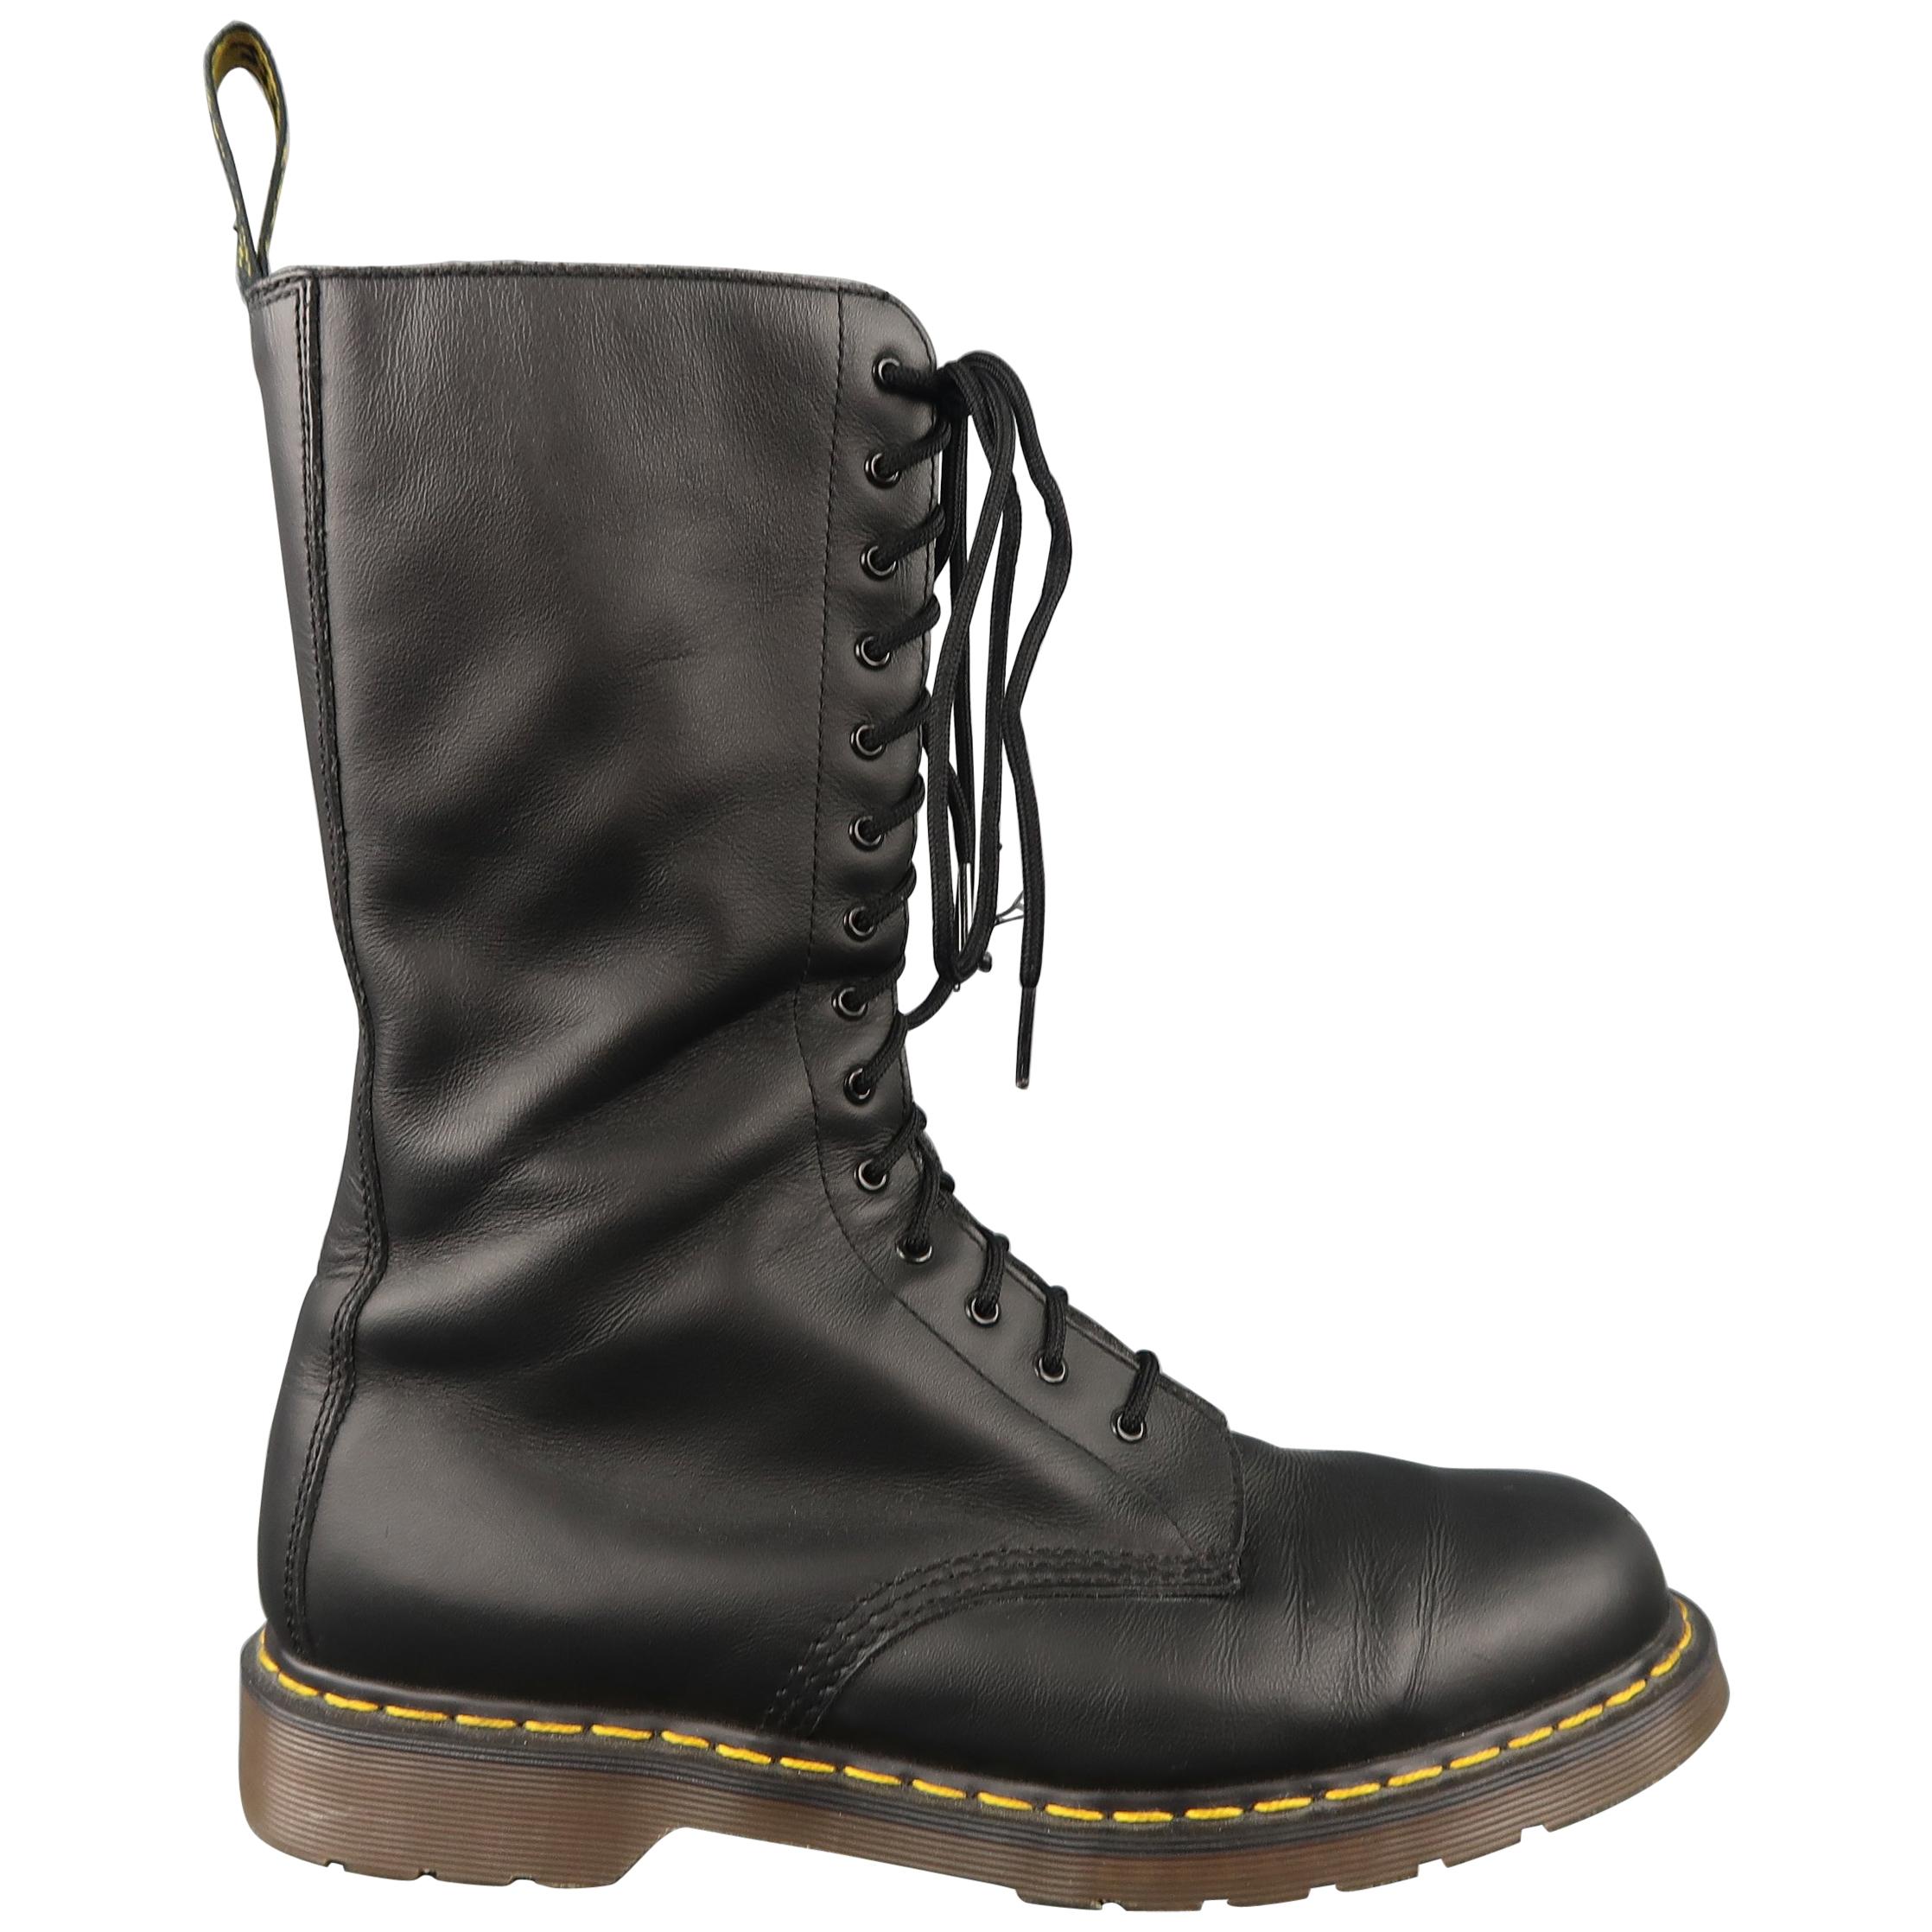 YOHJI YAMAMOTO Size 11 Black Matte Leather Calf High Boots